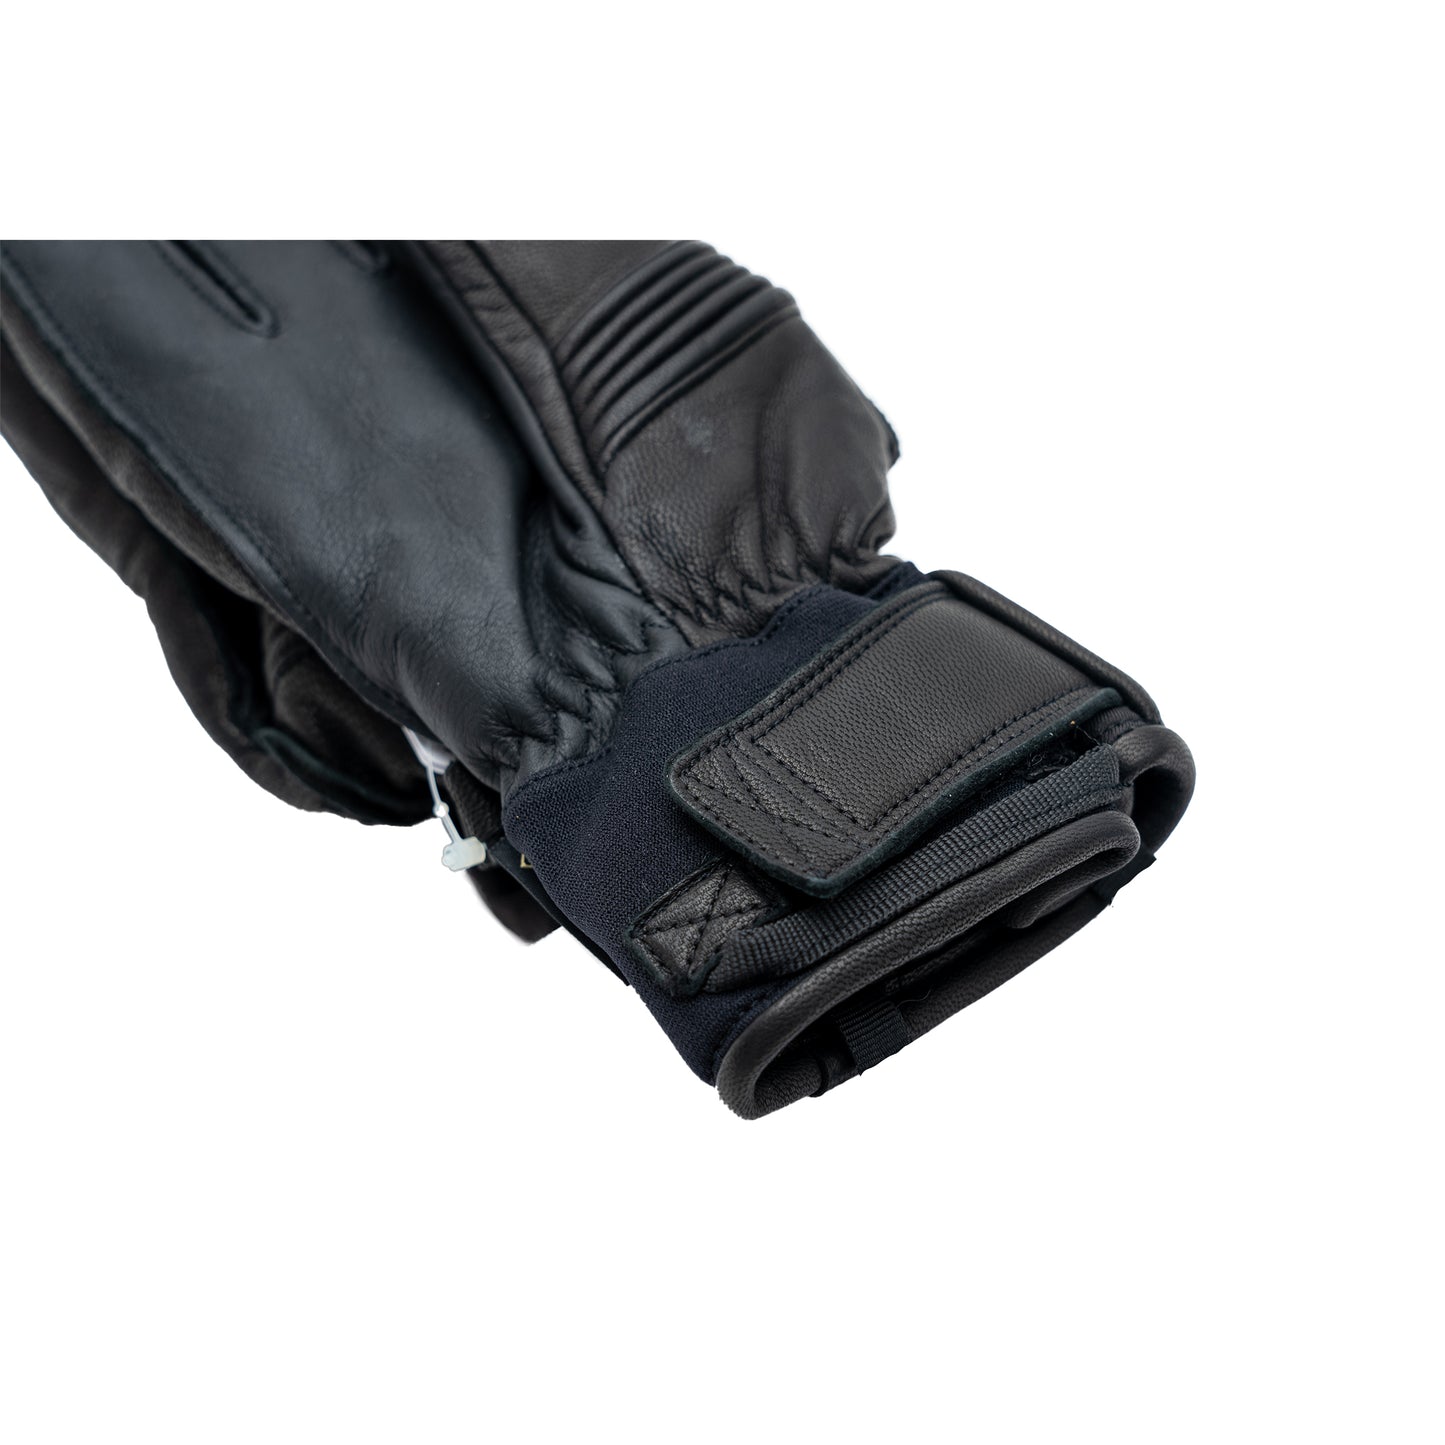 SX-202 Classic Combi Glove